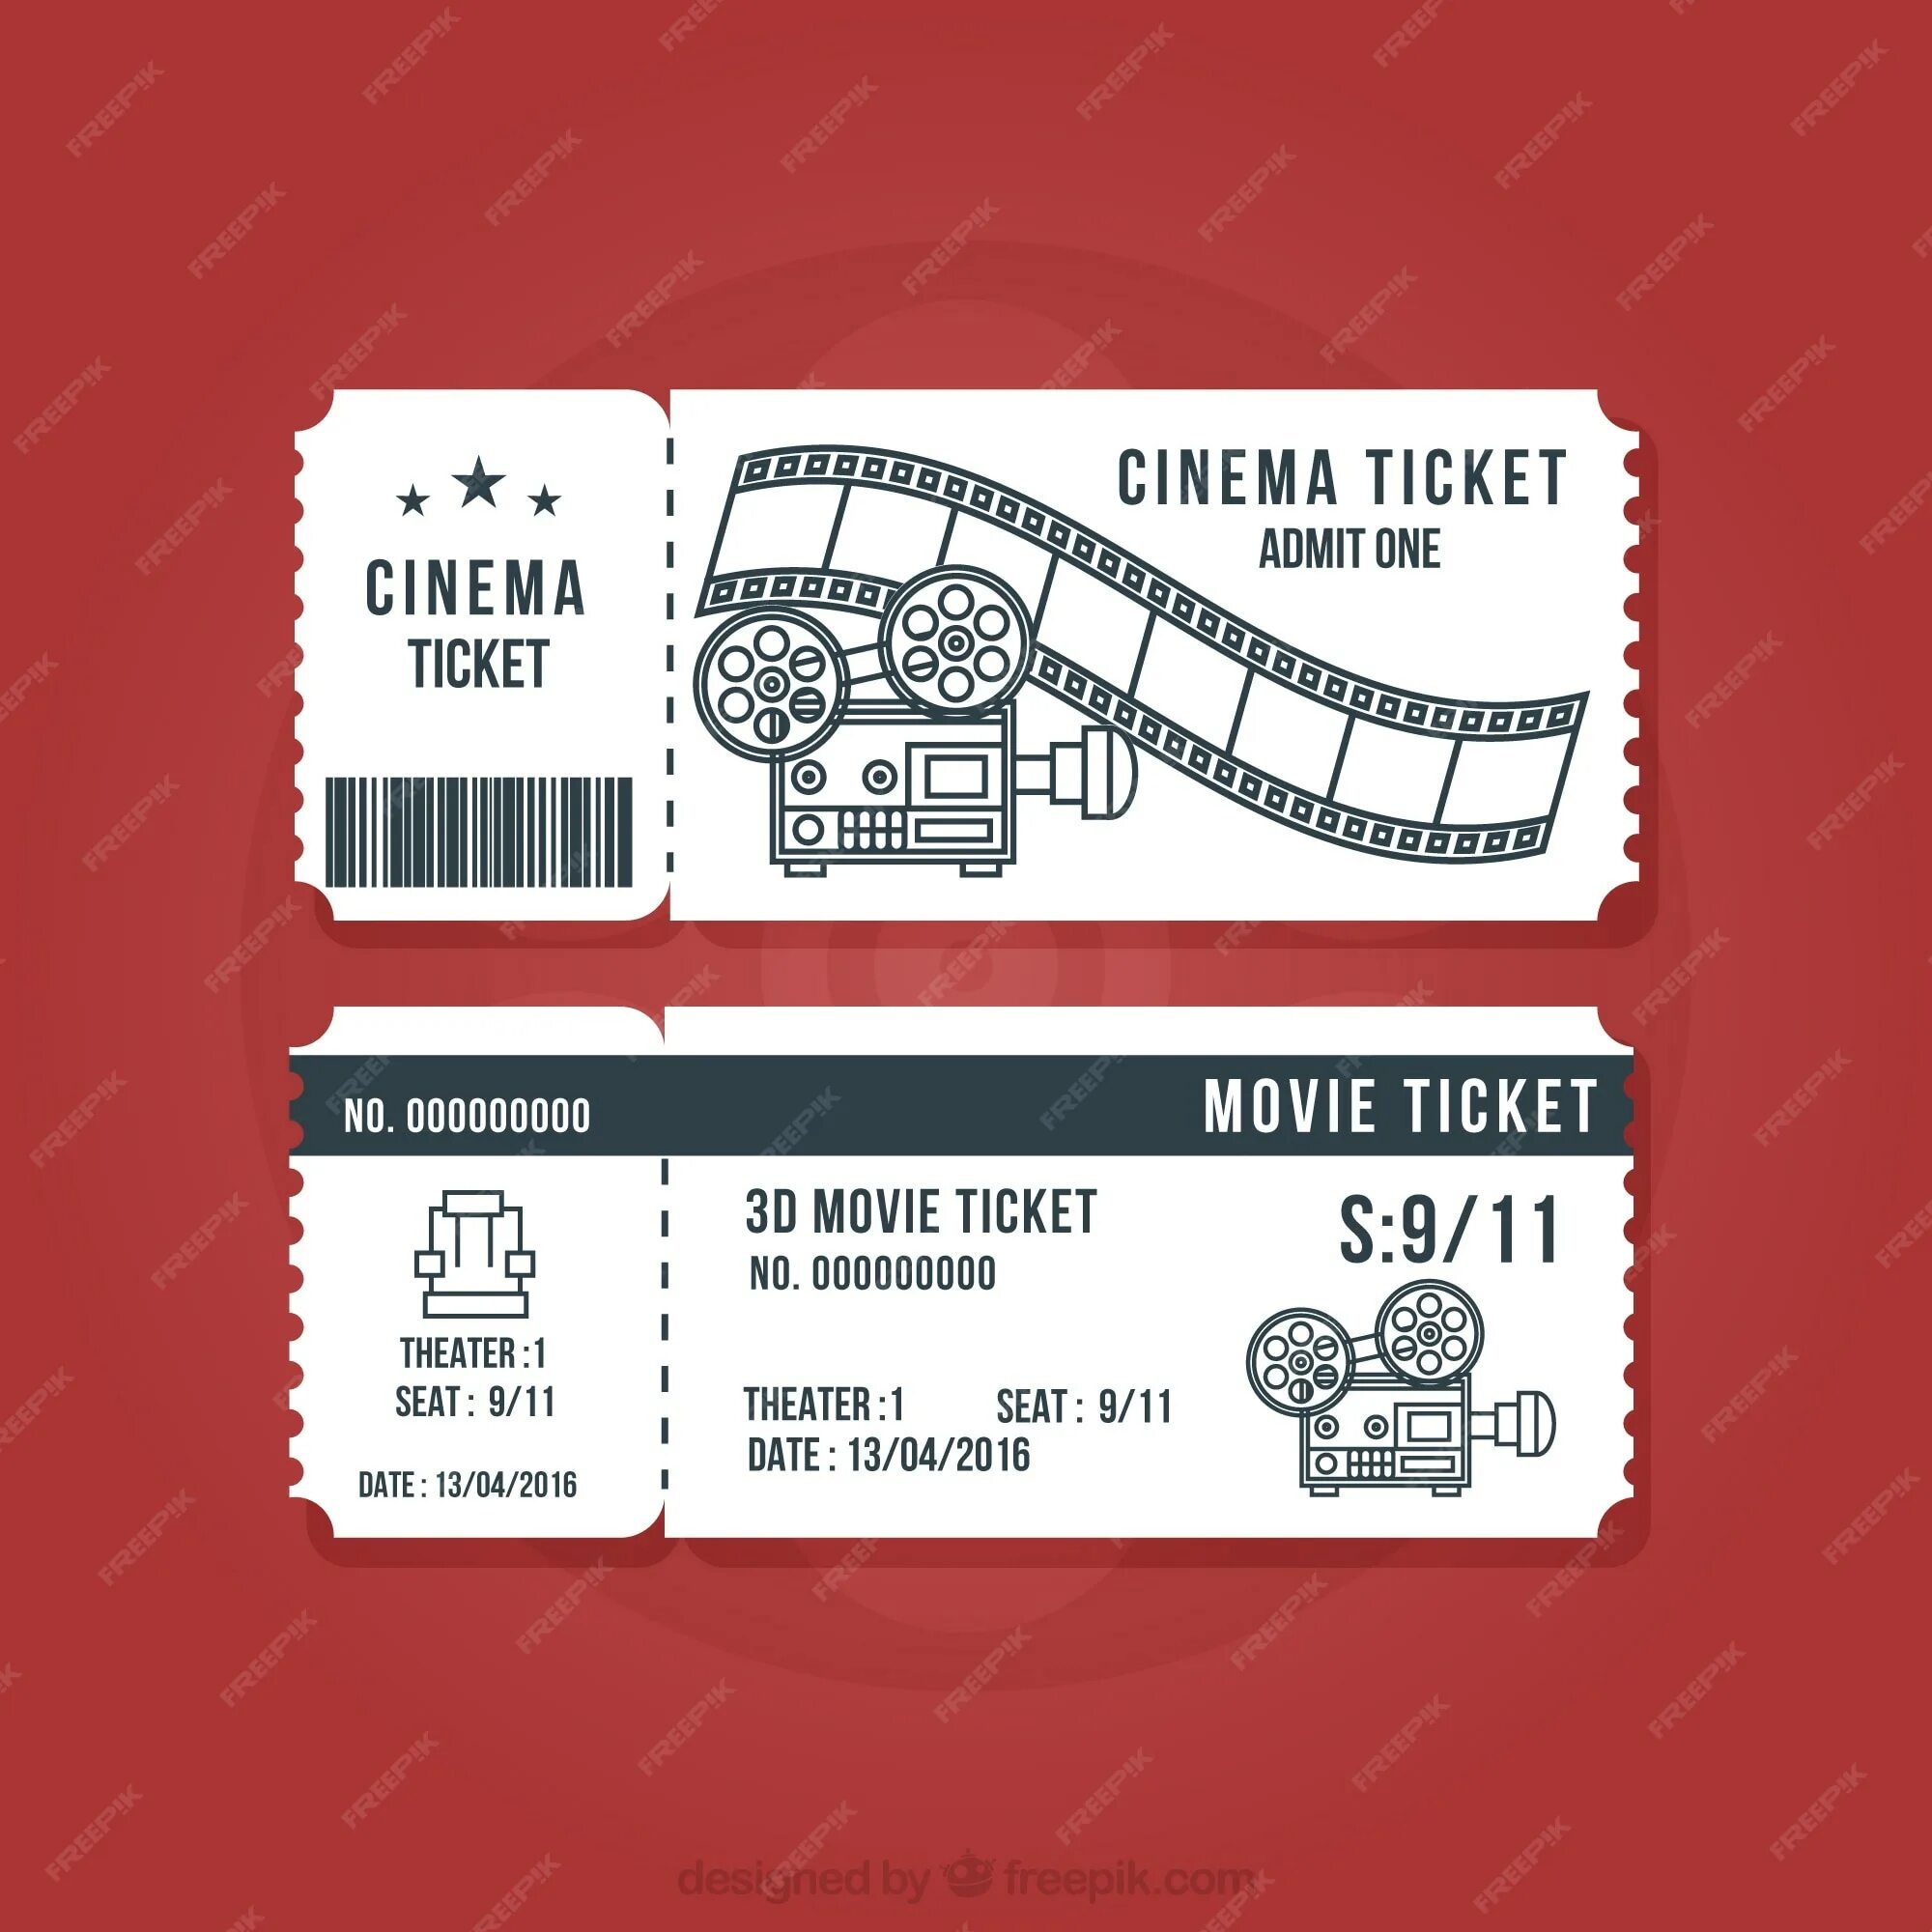 Поставь ticket. Билет в кинотеатр шаблон для печати. Макет билета. Макет билета в кинотеатр.